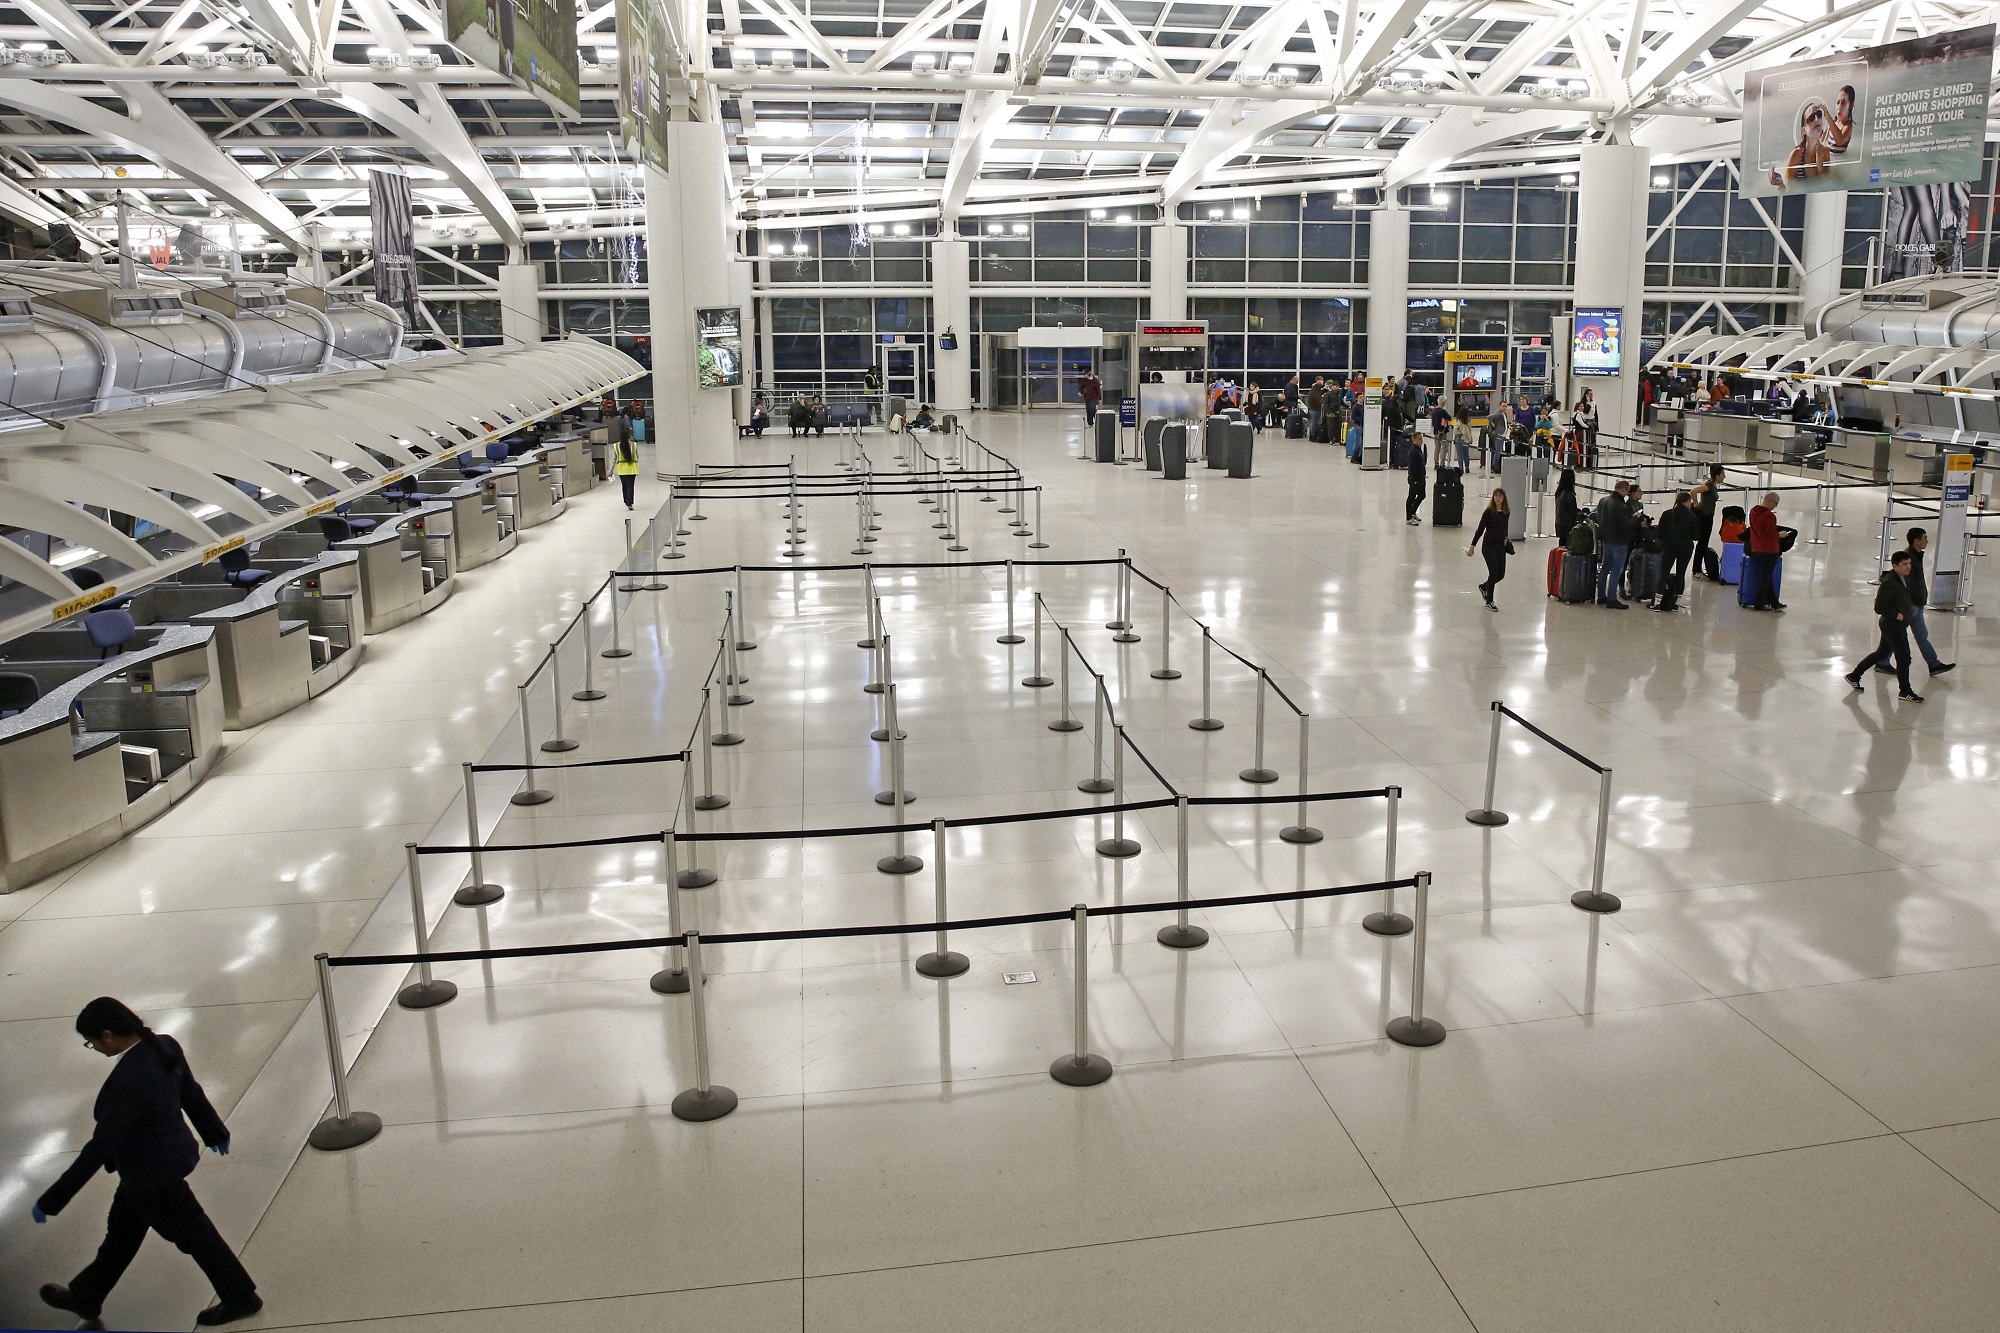 ΗΠΑ: Αίρονται οι απαλλαγές των ελάχιστων απαιτήσεων για διεθνείς πτήσεις στα μεγαλύτερα αεροδρόμια